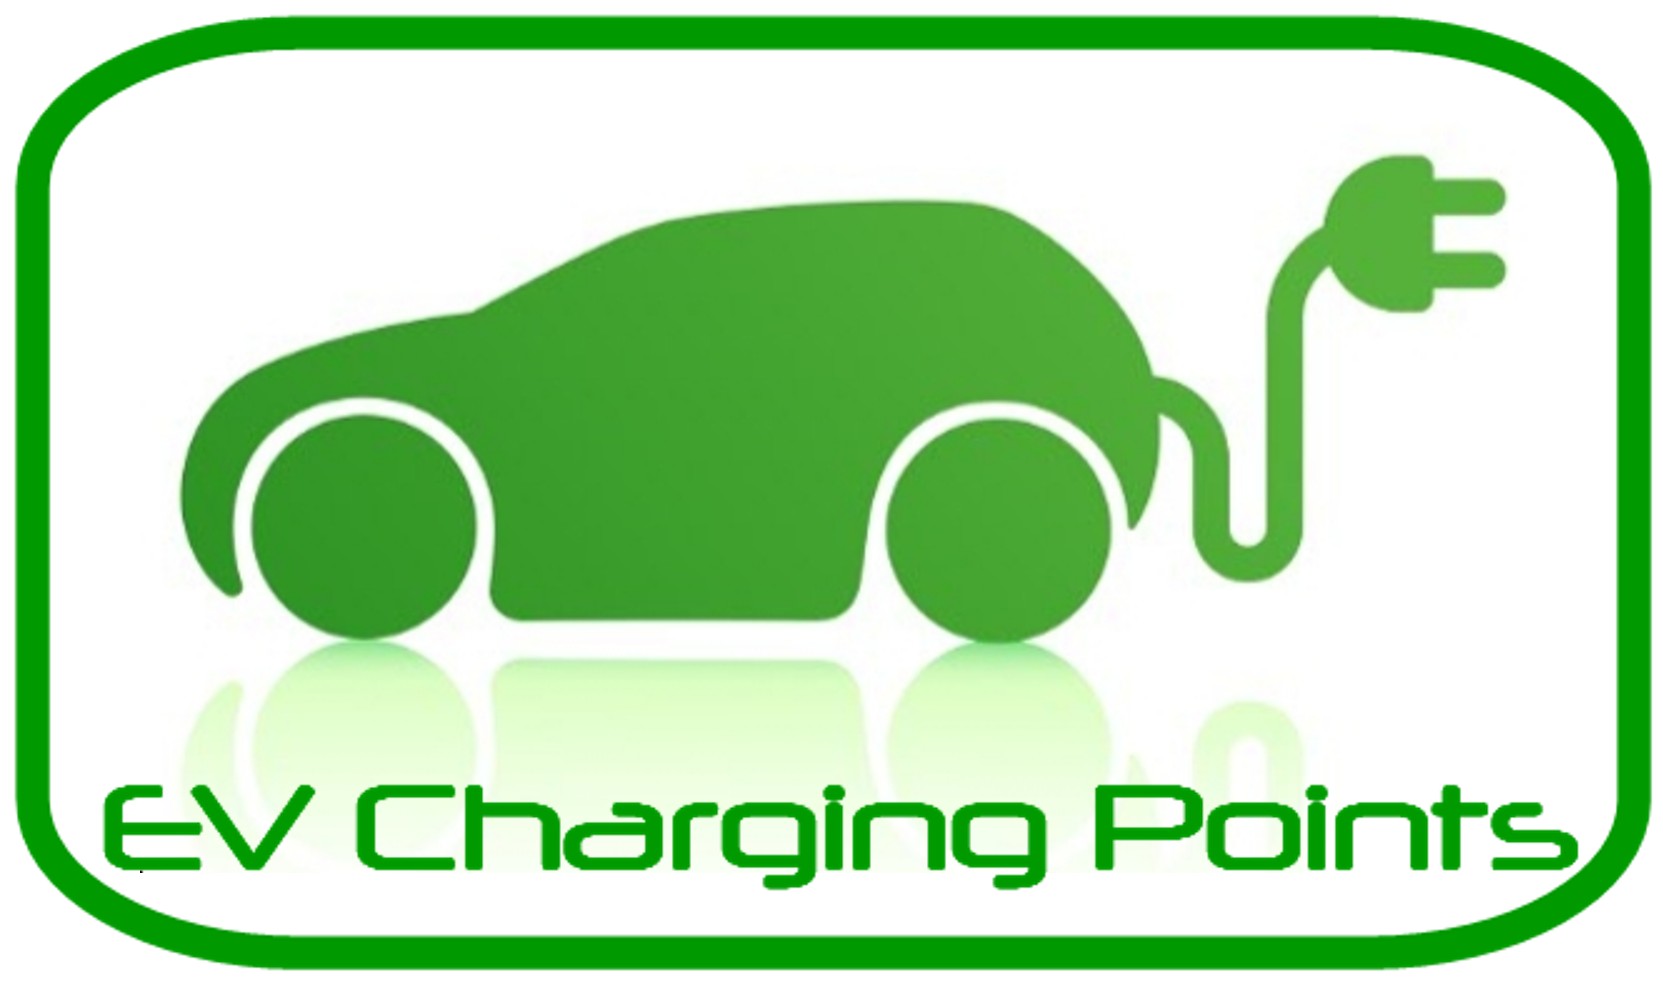 EV Charging Station in Delhi : सभी सरकारी ऑफिसों में लगाए जाएंगे EV चार्जिंग स्टेशन, दिल्ली सरकार का बड़ा फैसला